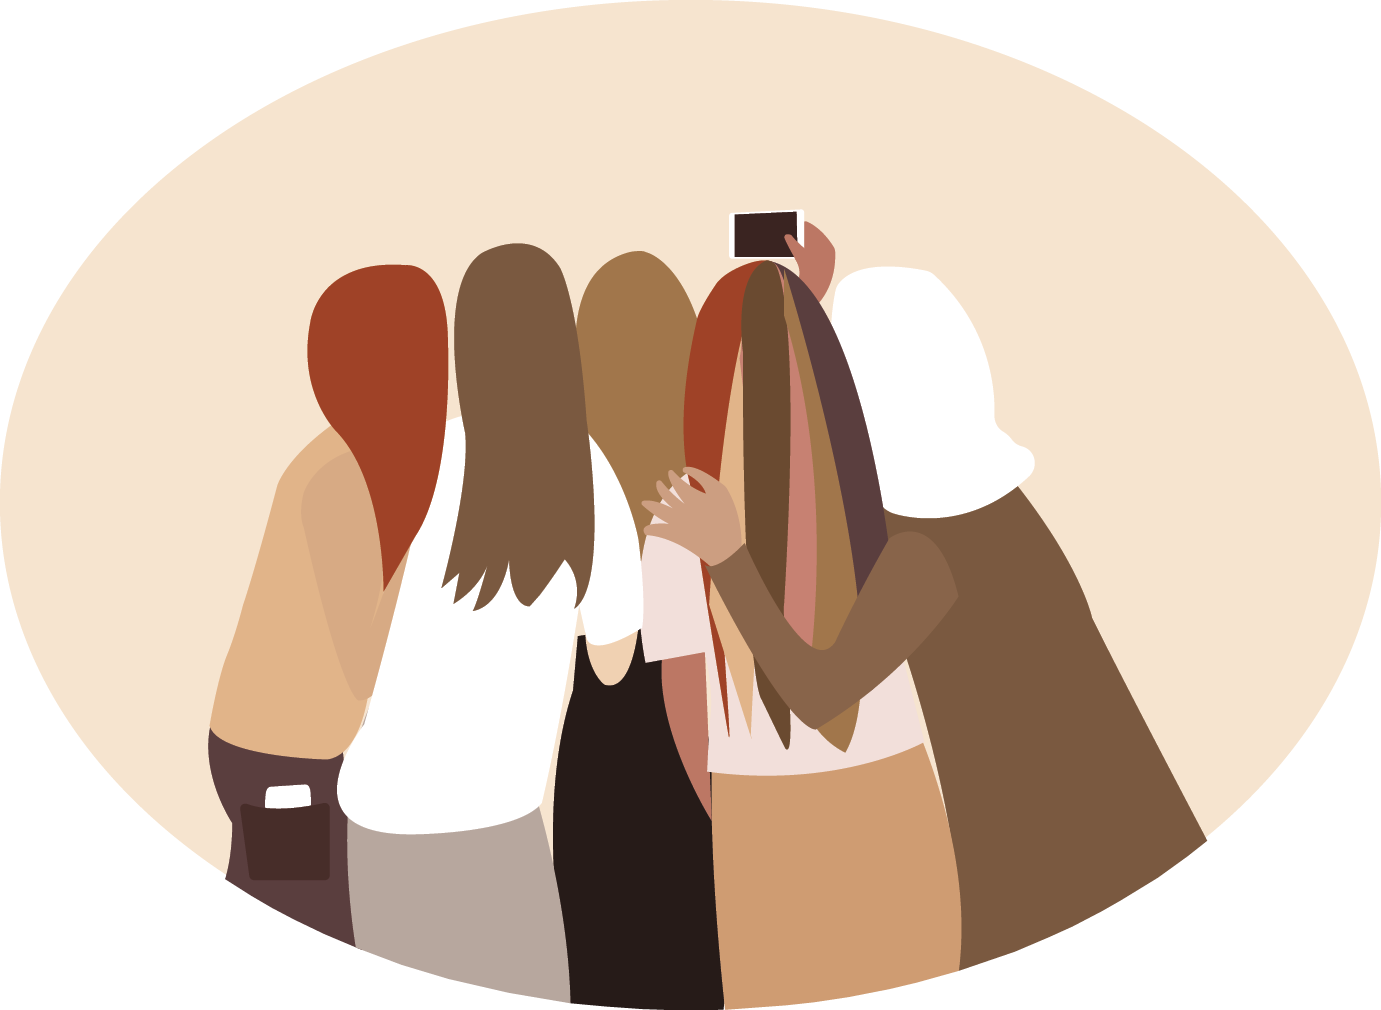 Ilustração. Em fundo bege com formato oval, cinco mulheres estão de costas, abraçadas e uma delas segura um celular esticado à frente dos rostos para tirar selfie. Elas vestem roupas em tons de preto, branco, bege e marrom.